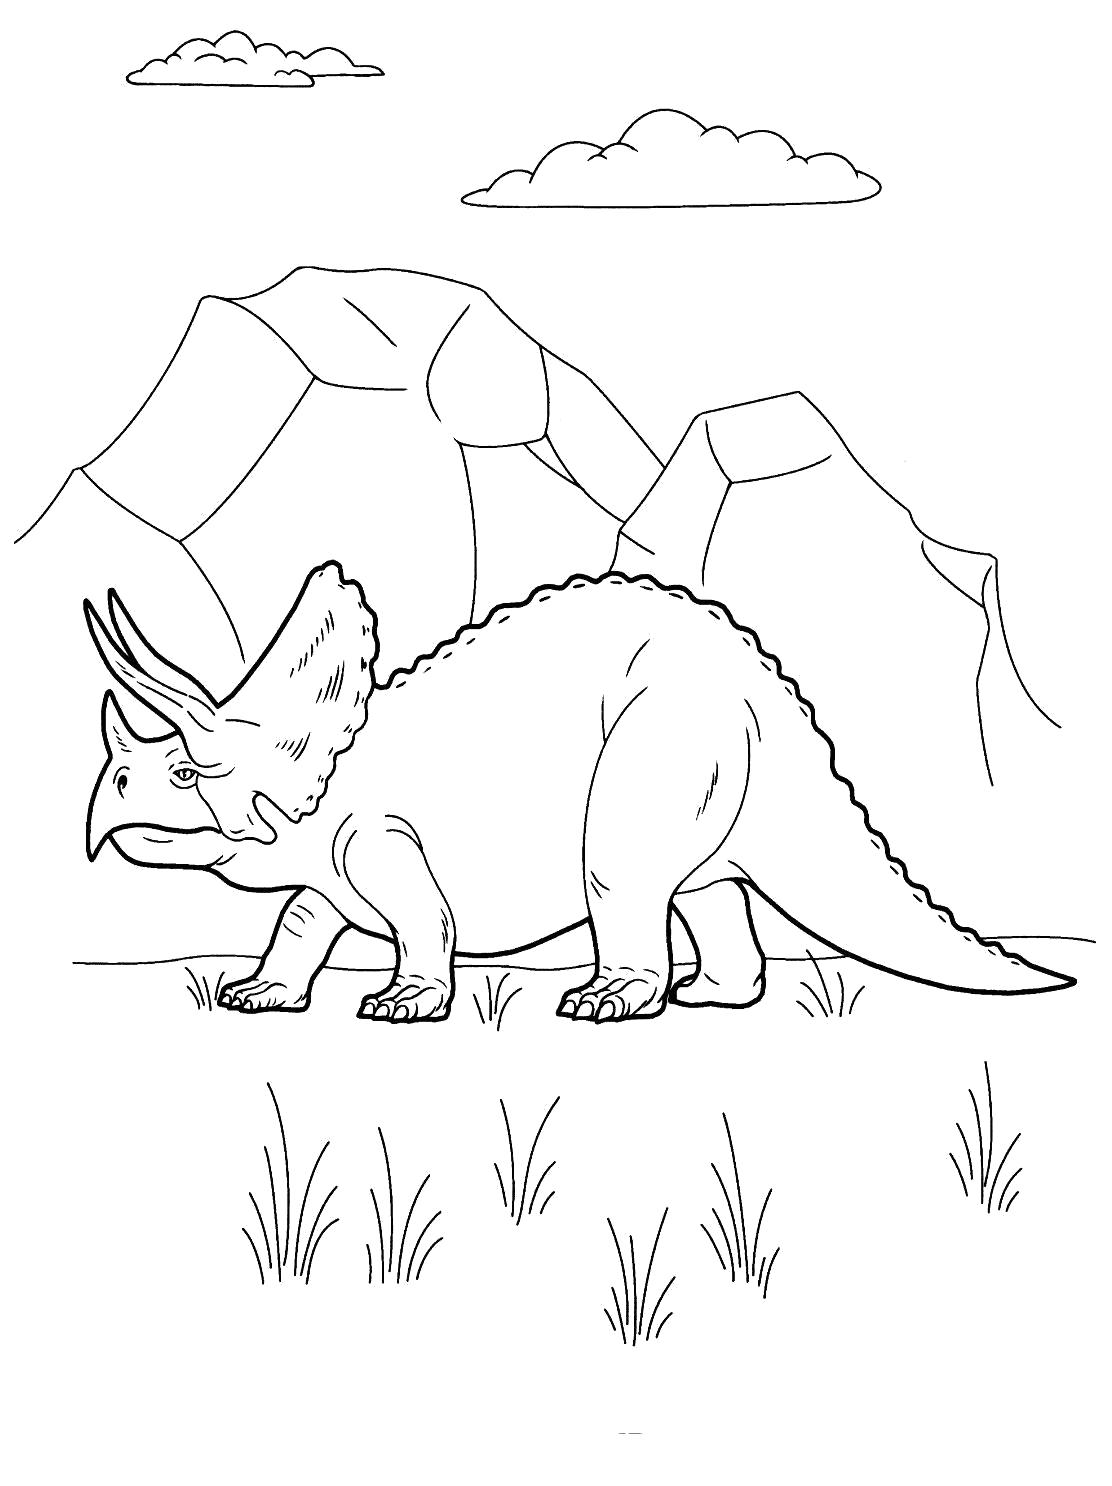 Раскраска Распечатать раскраску про динозавров. динозавр